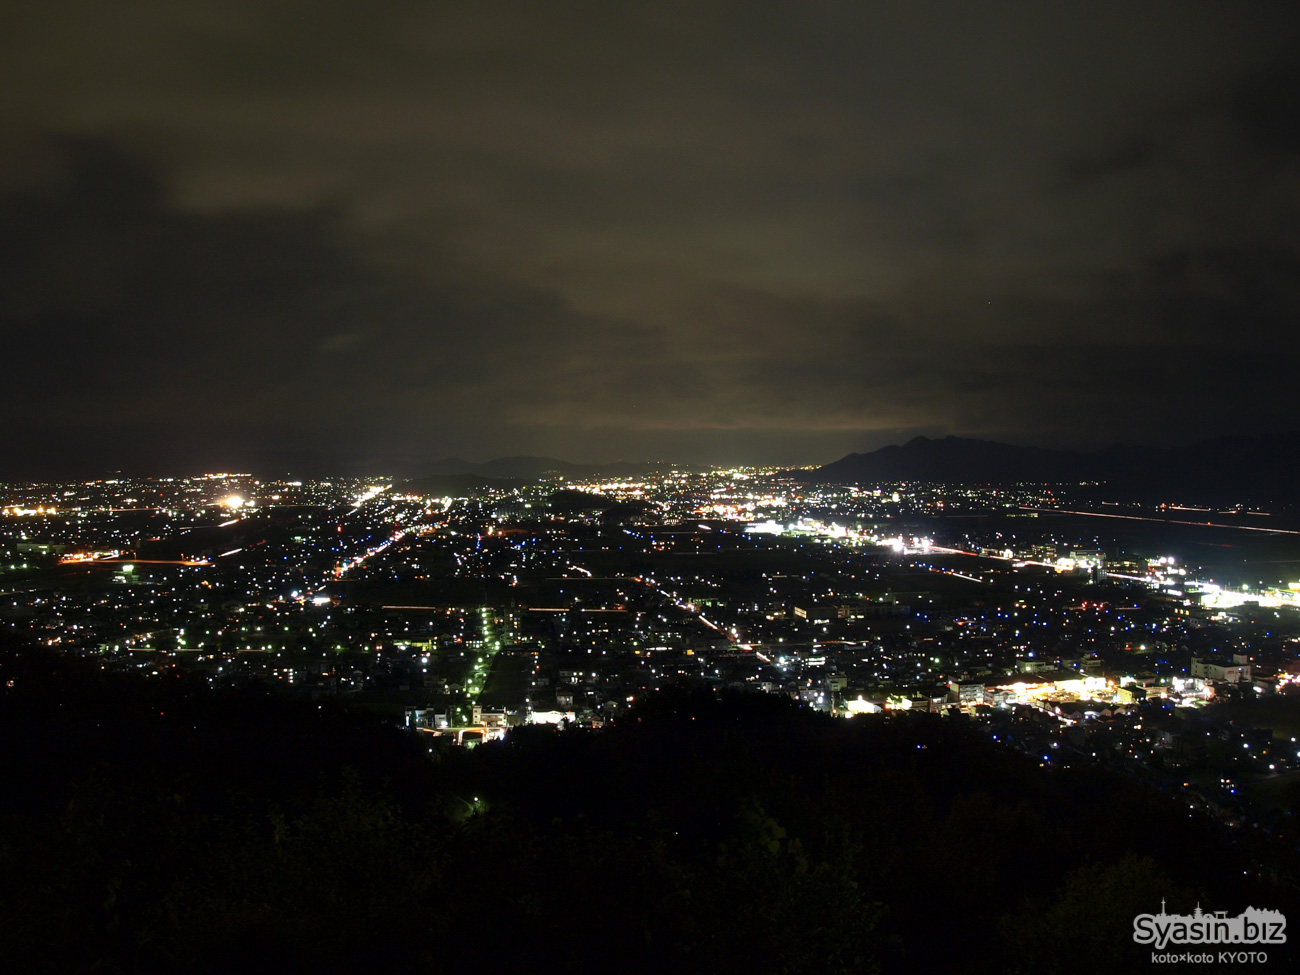 村国山 芦山公園の夜景情報 – 福井県越前市